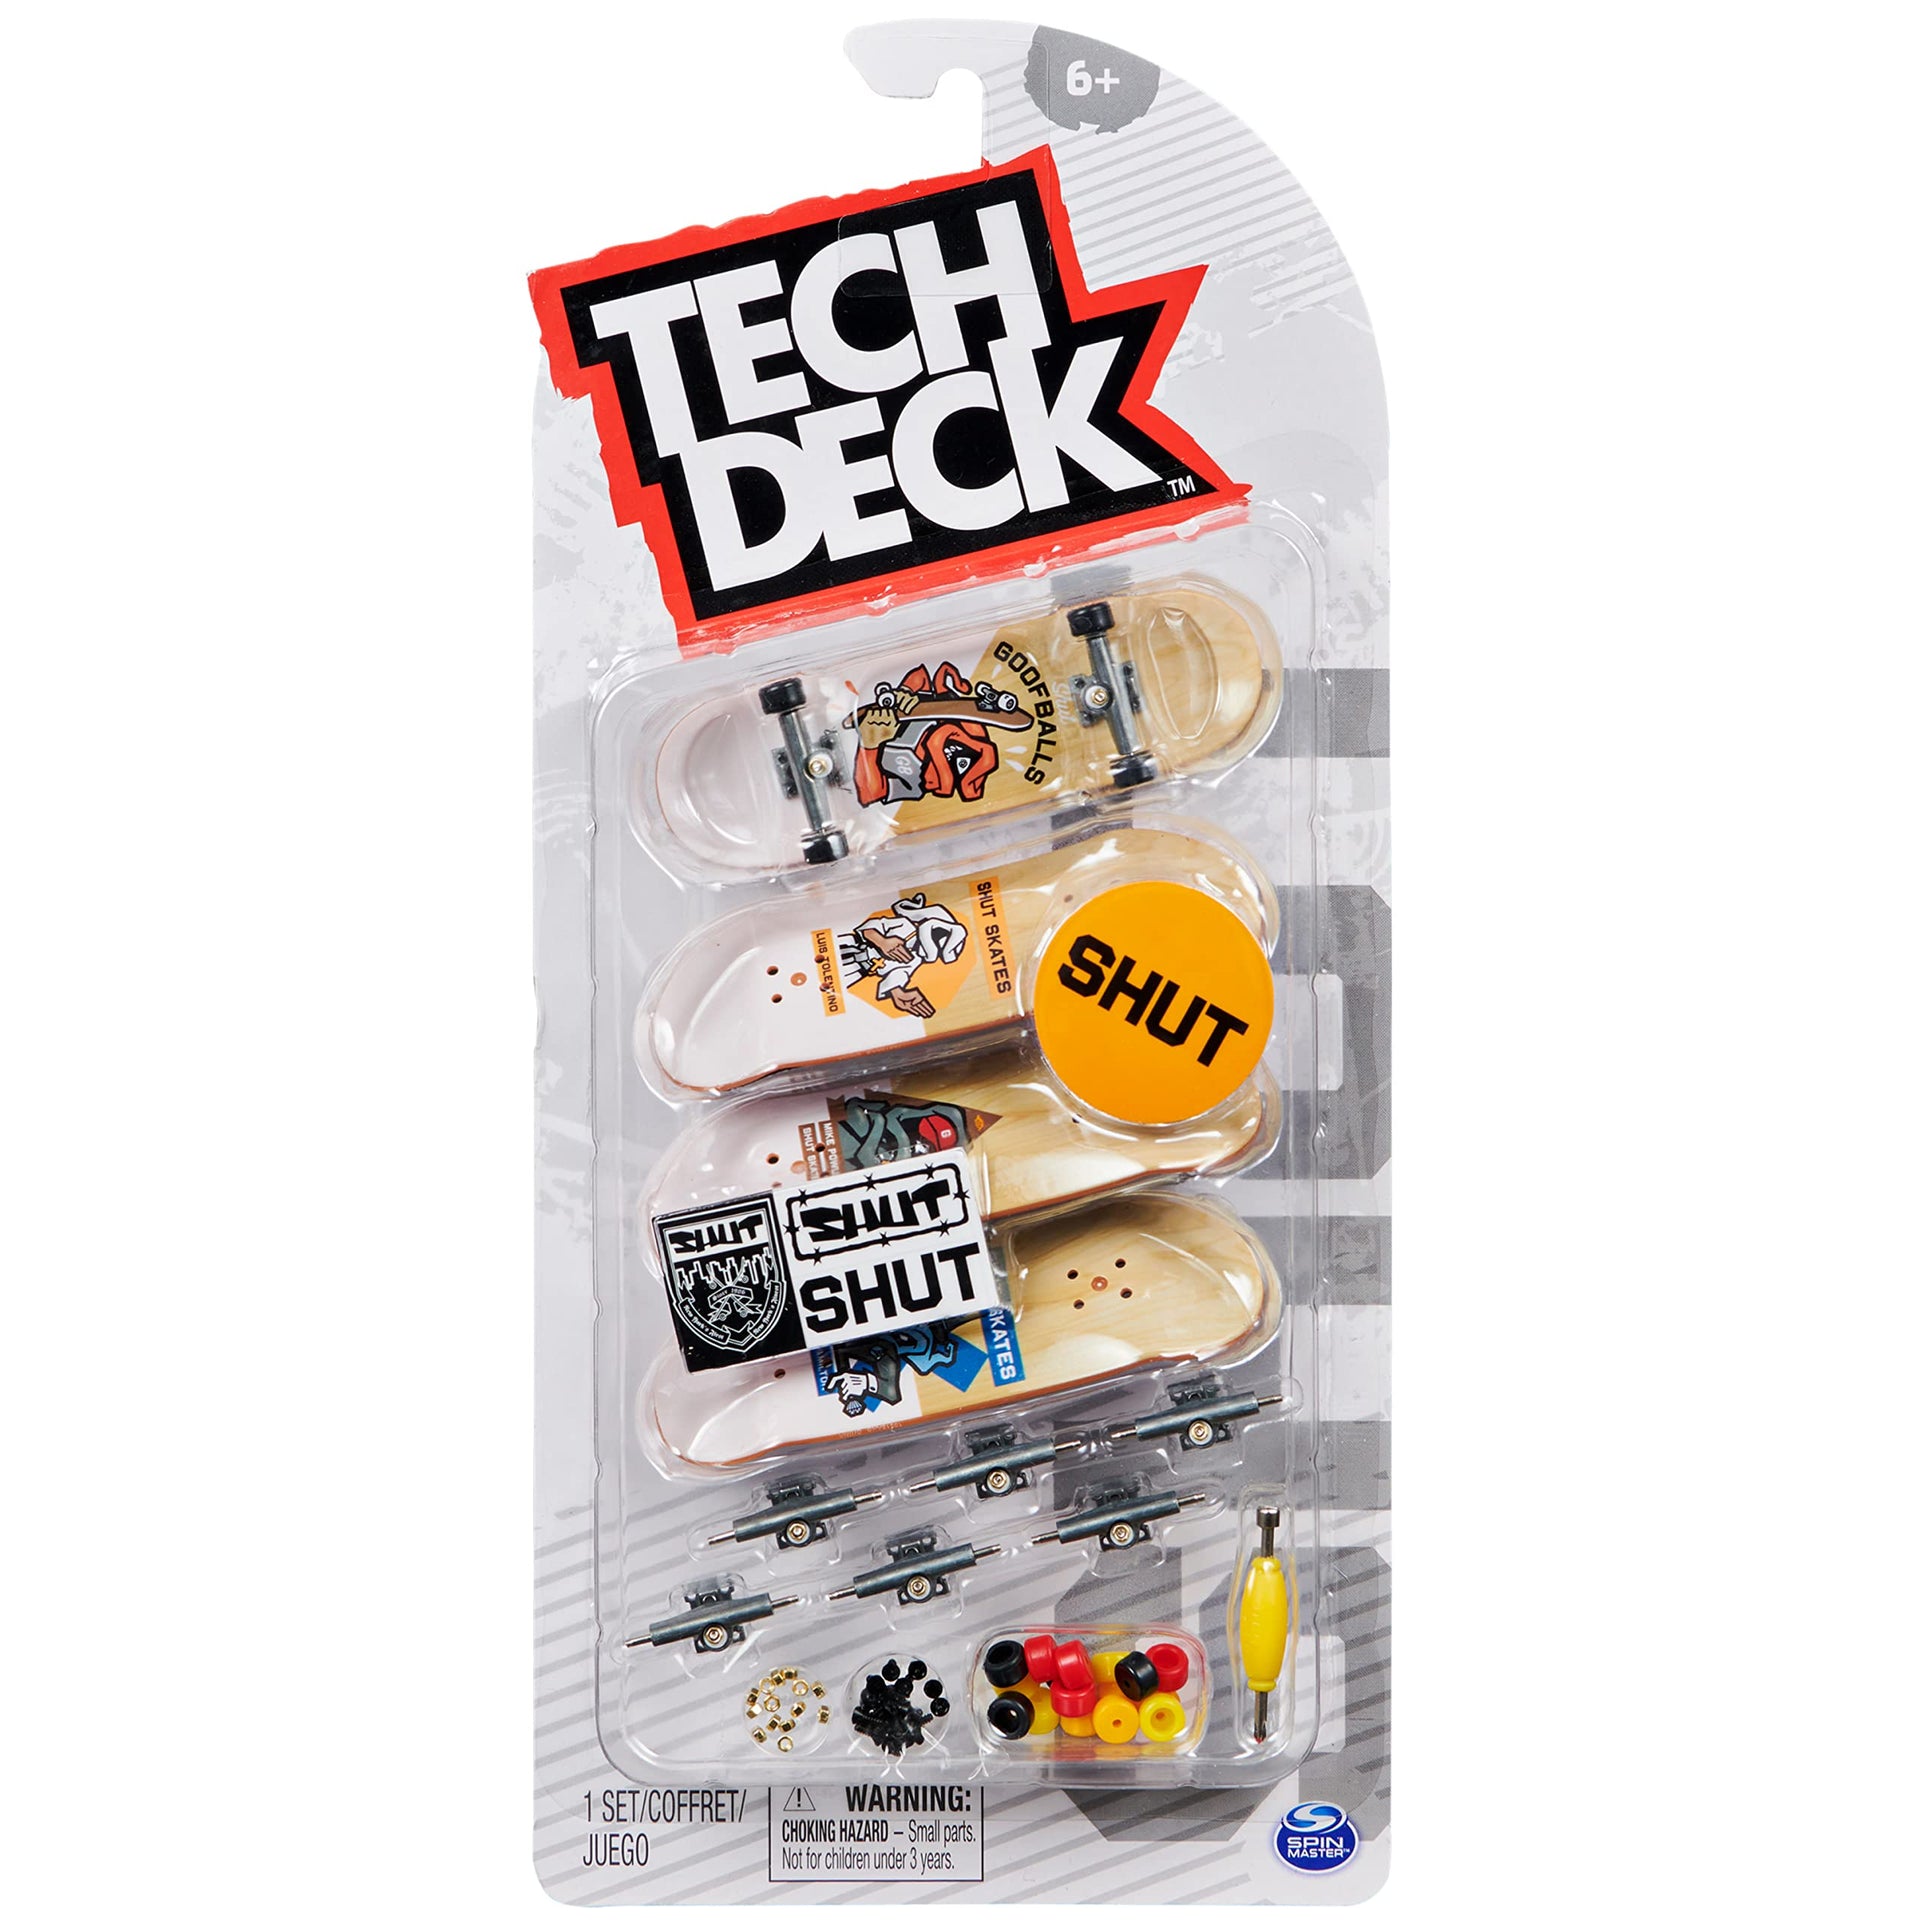 Tech Deck - 96mm Fingerboard (1 Random Style) –